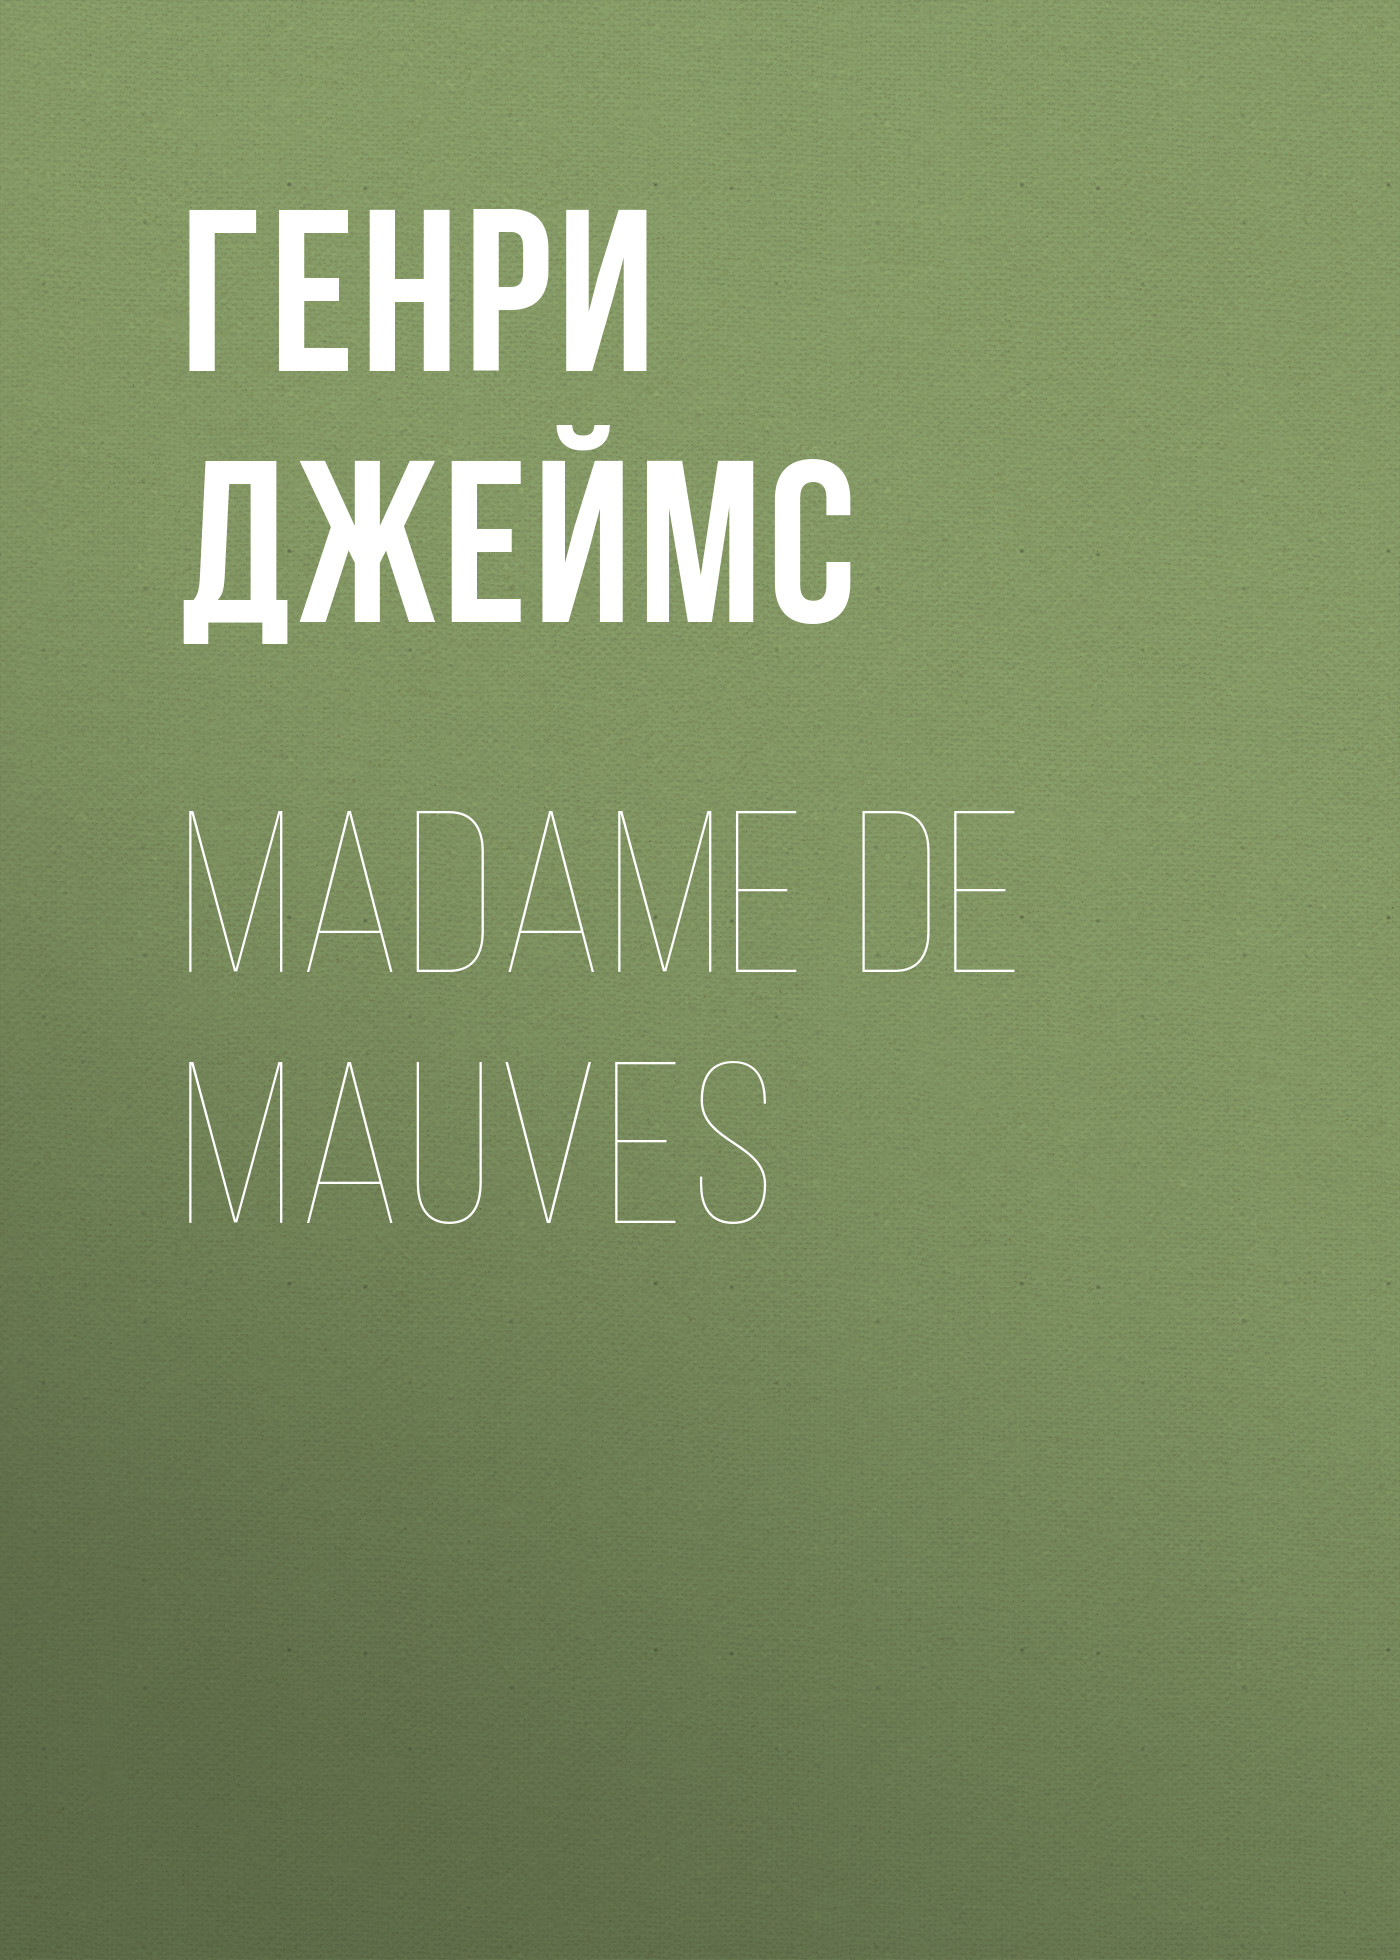 Книга Madame De Mauves из серии , созданная Генри Джеймс, может относится к жанру Зарубежная классика, Зарубежная старинная литература. Стоимость электронной книги Madame De Mauves с идентификатором 34841622 составляет 0 руб.